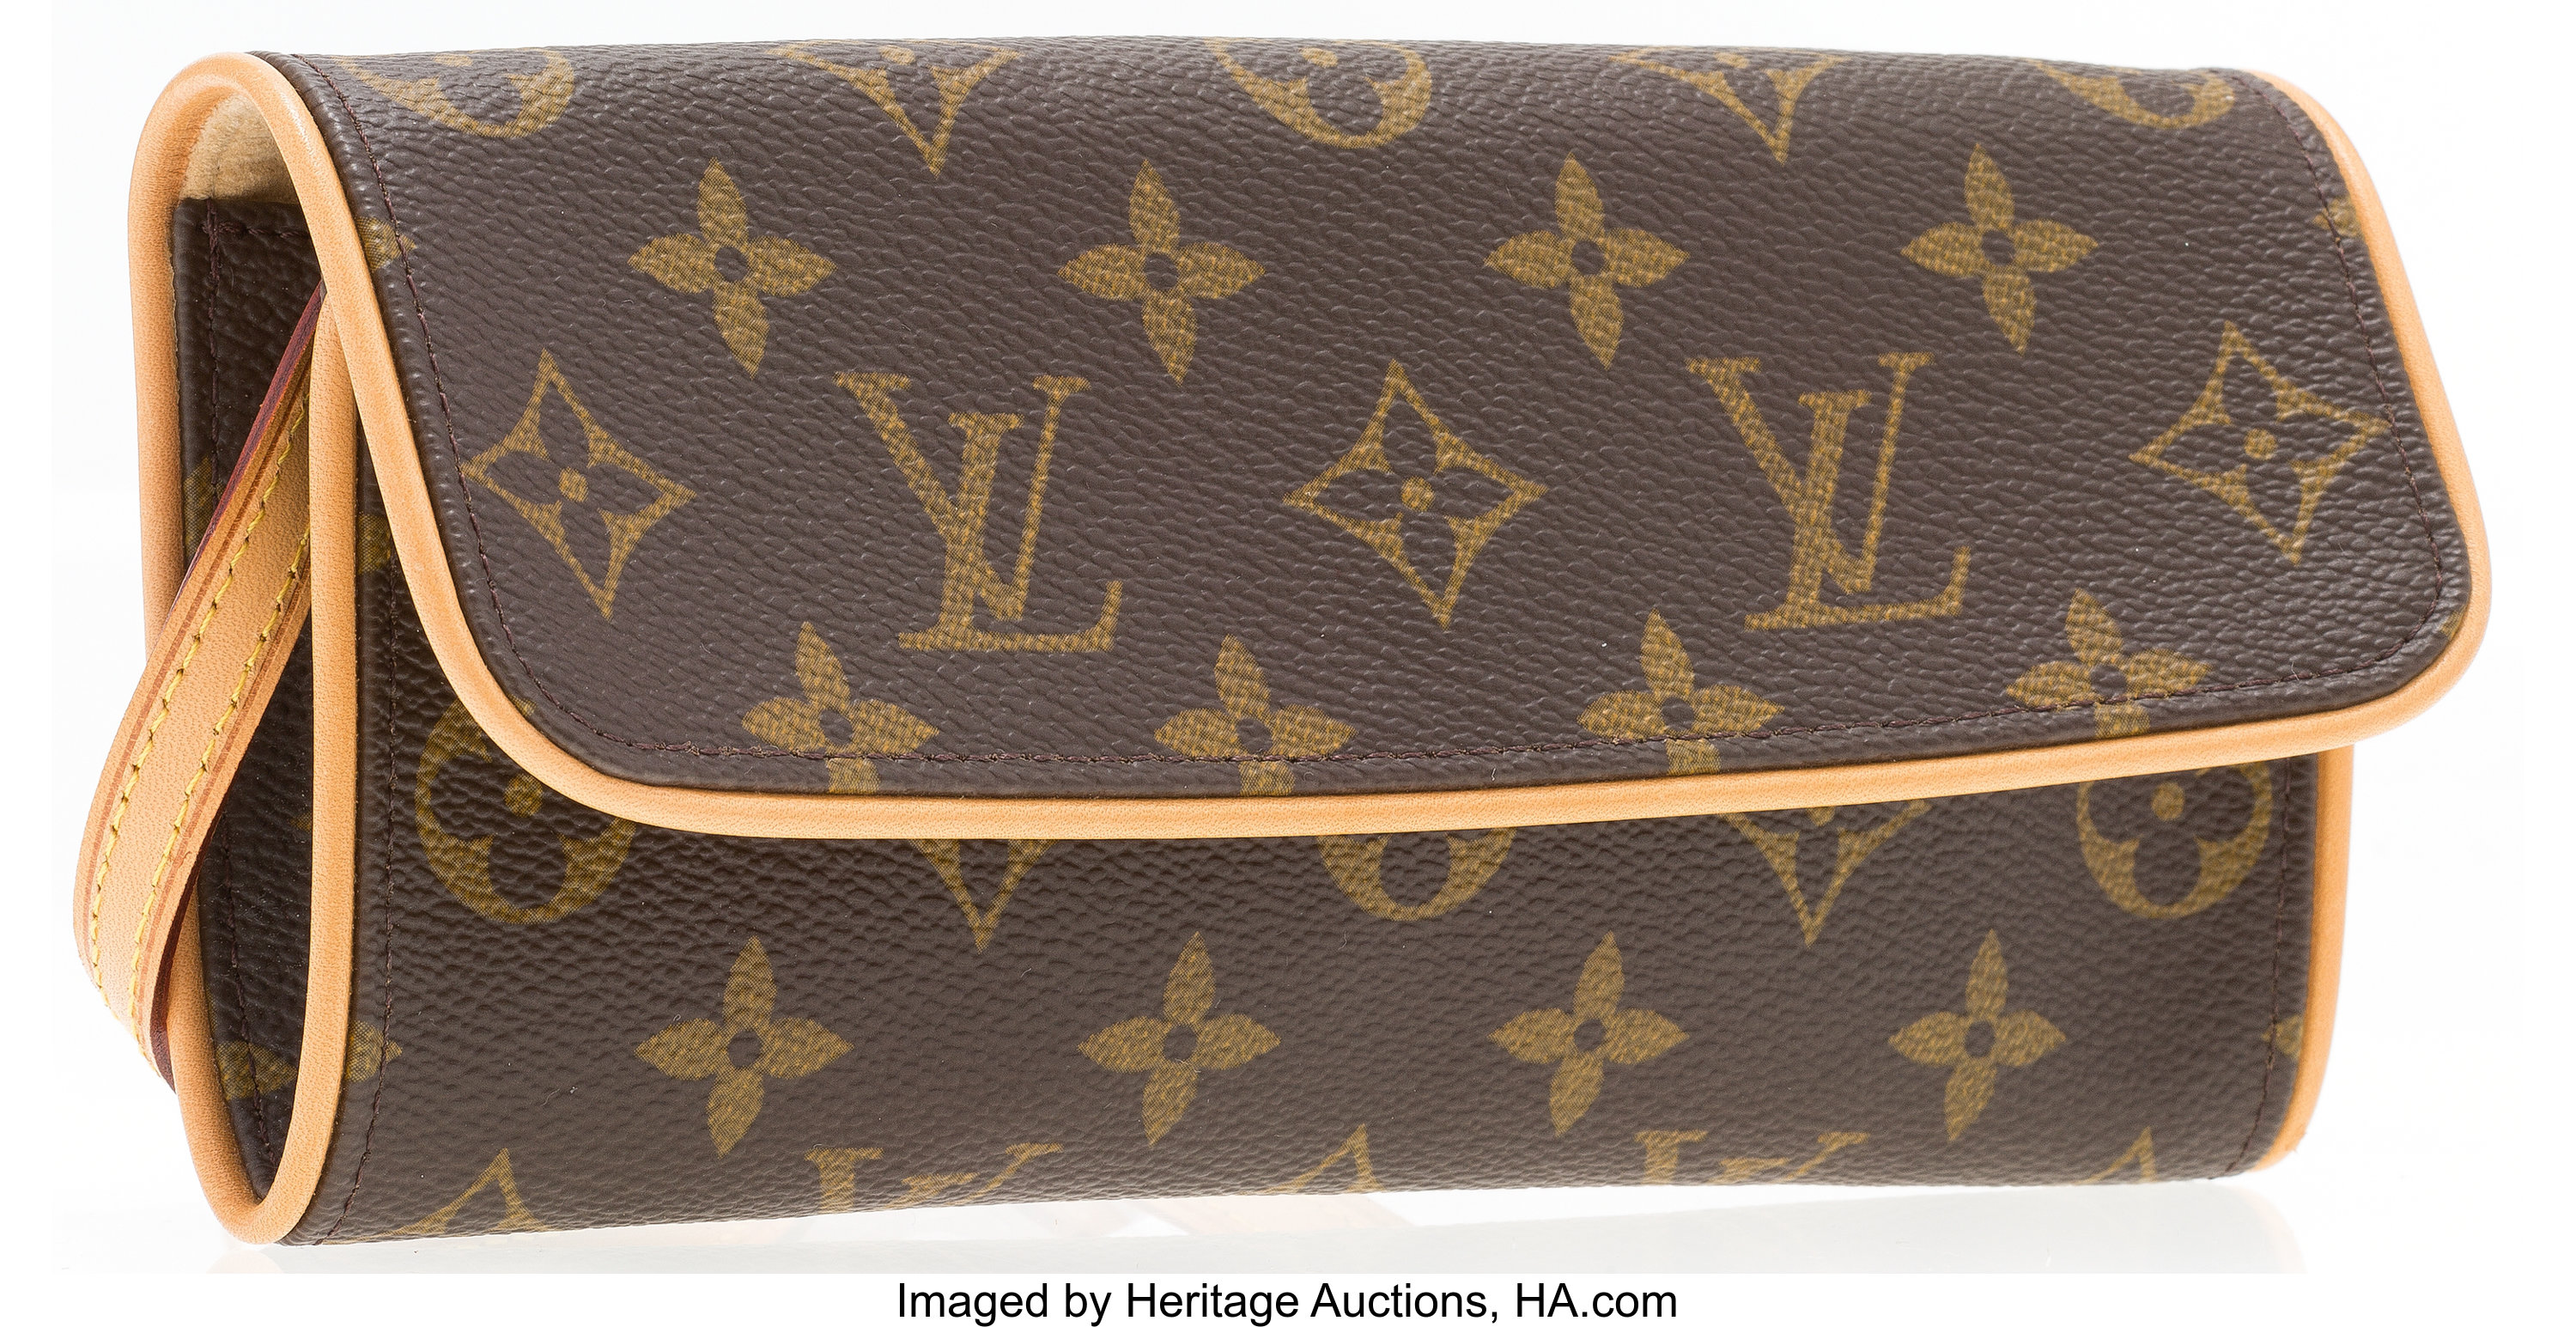 Sold at Auction: Louis Vuitton, LOUIS VUITTON POCHETTE FLORENTINE